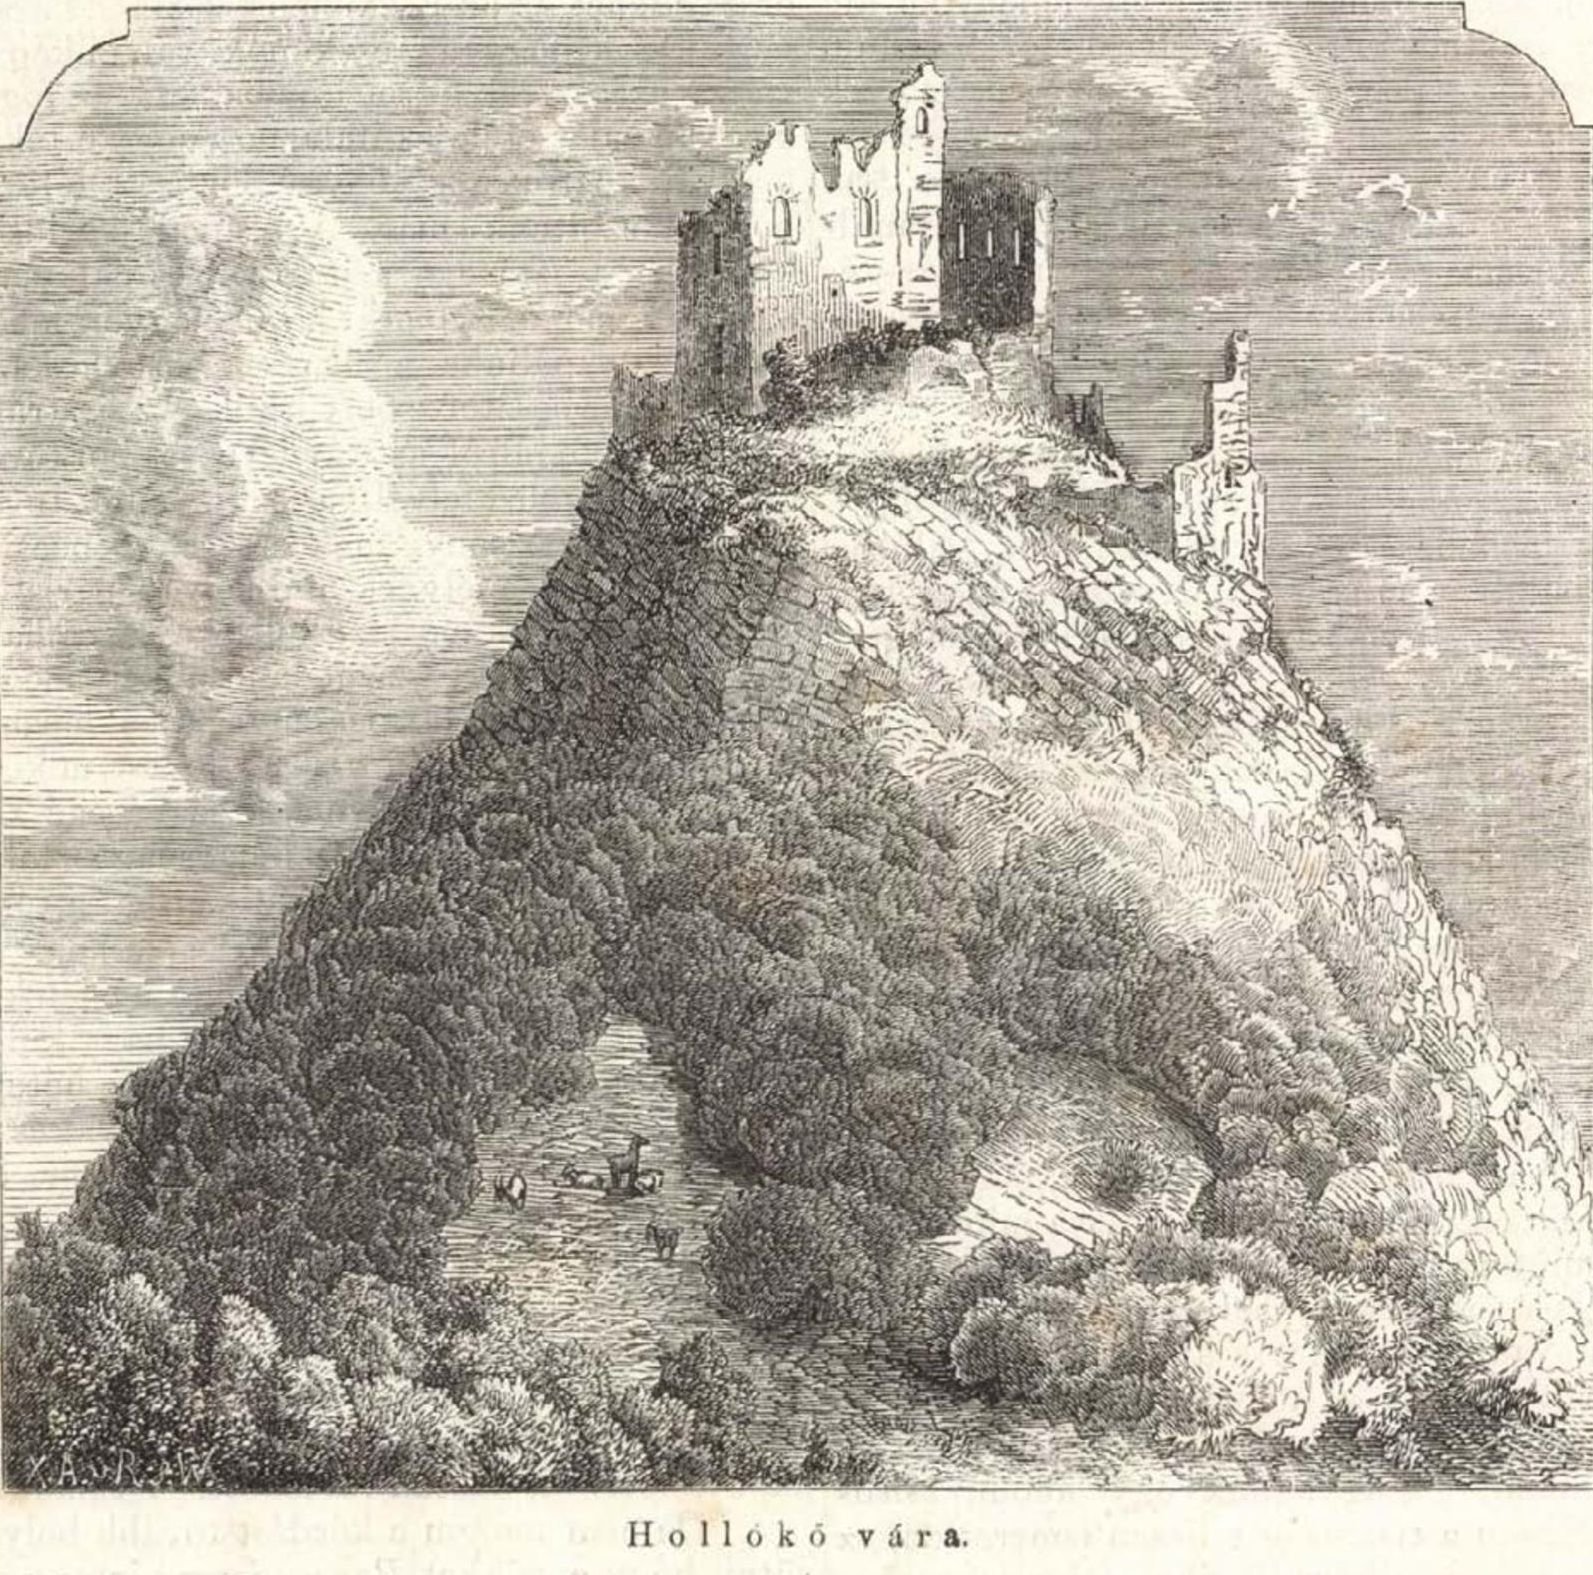 Metszet Hollókő váráról a Vasárnapi Újság 1861.évfolyamában